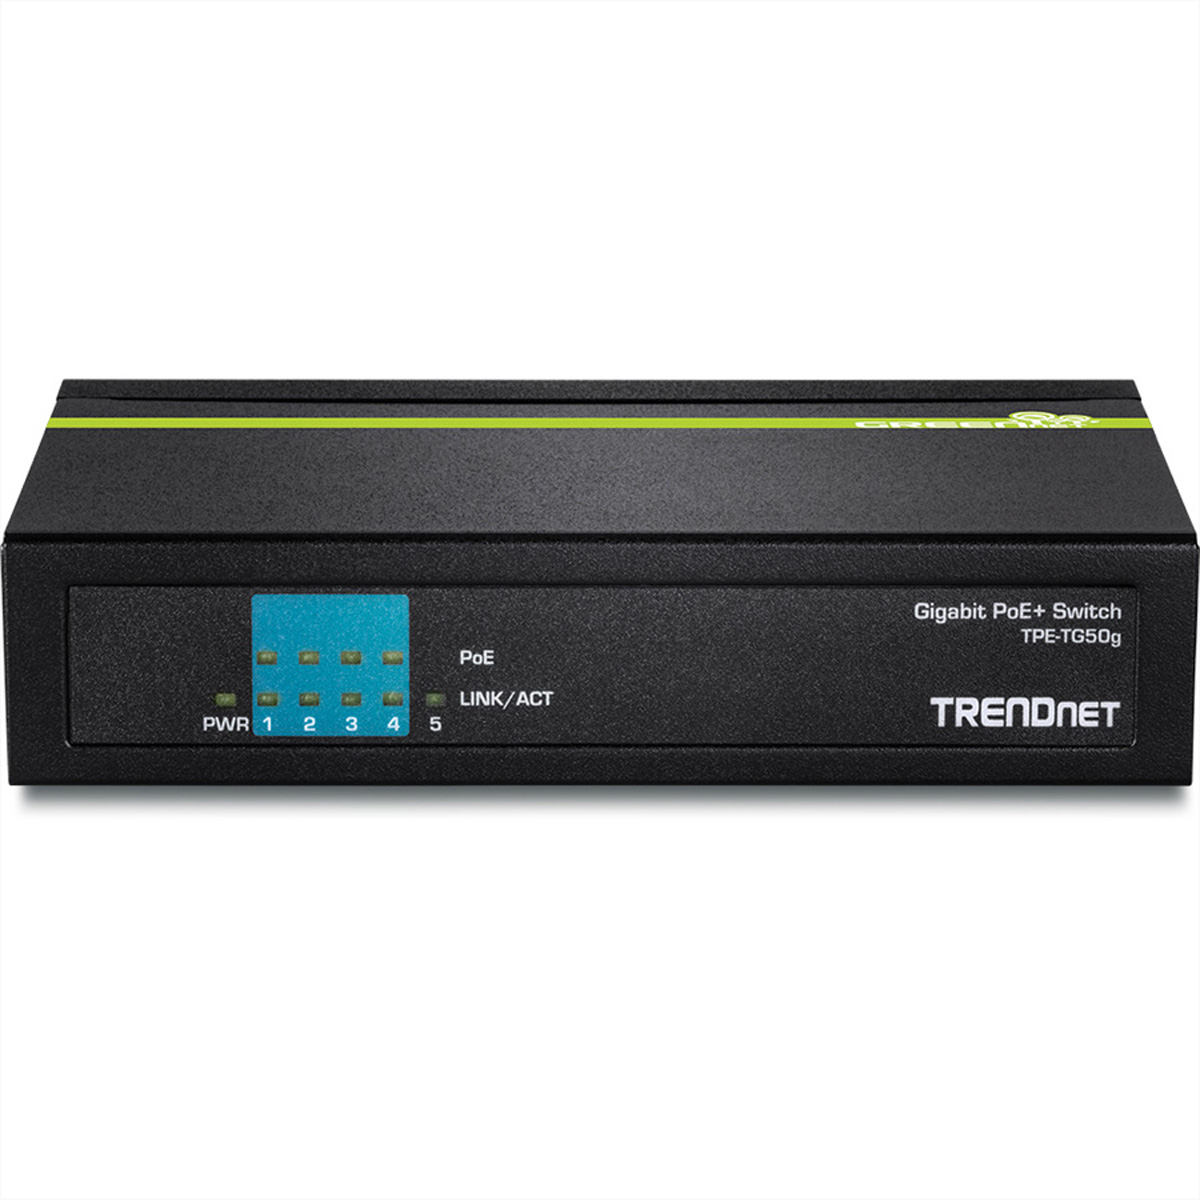 TRENDNET TPE-TG50g 5-Port Gigabit Switch Switch Gigabit PoE+ Ethernet